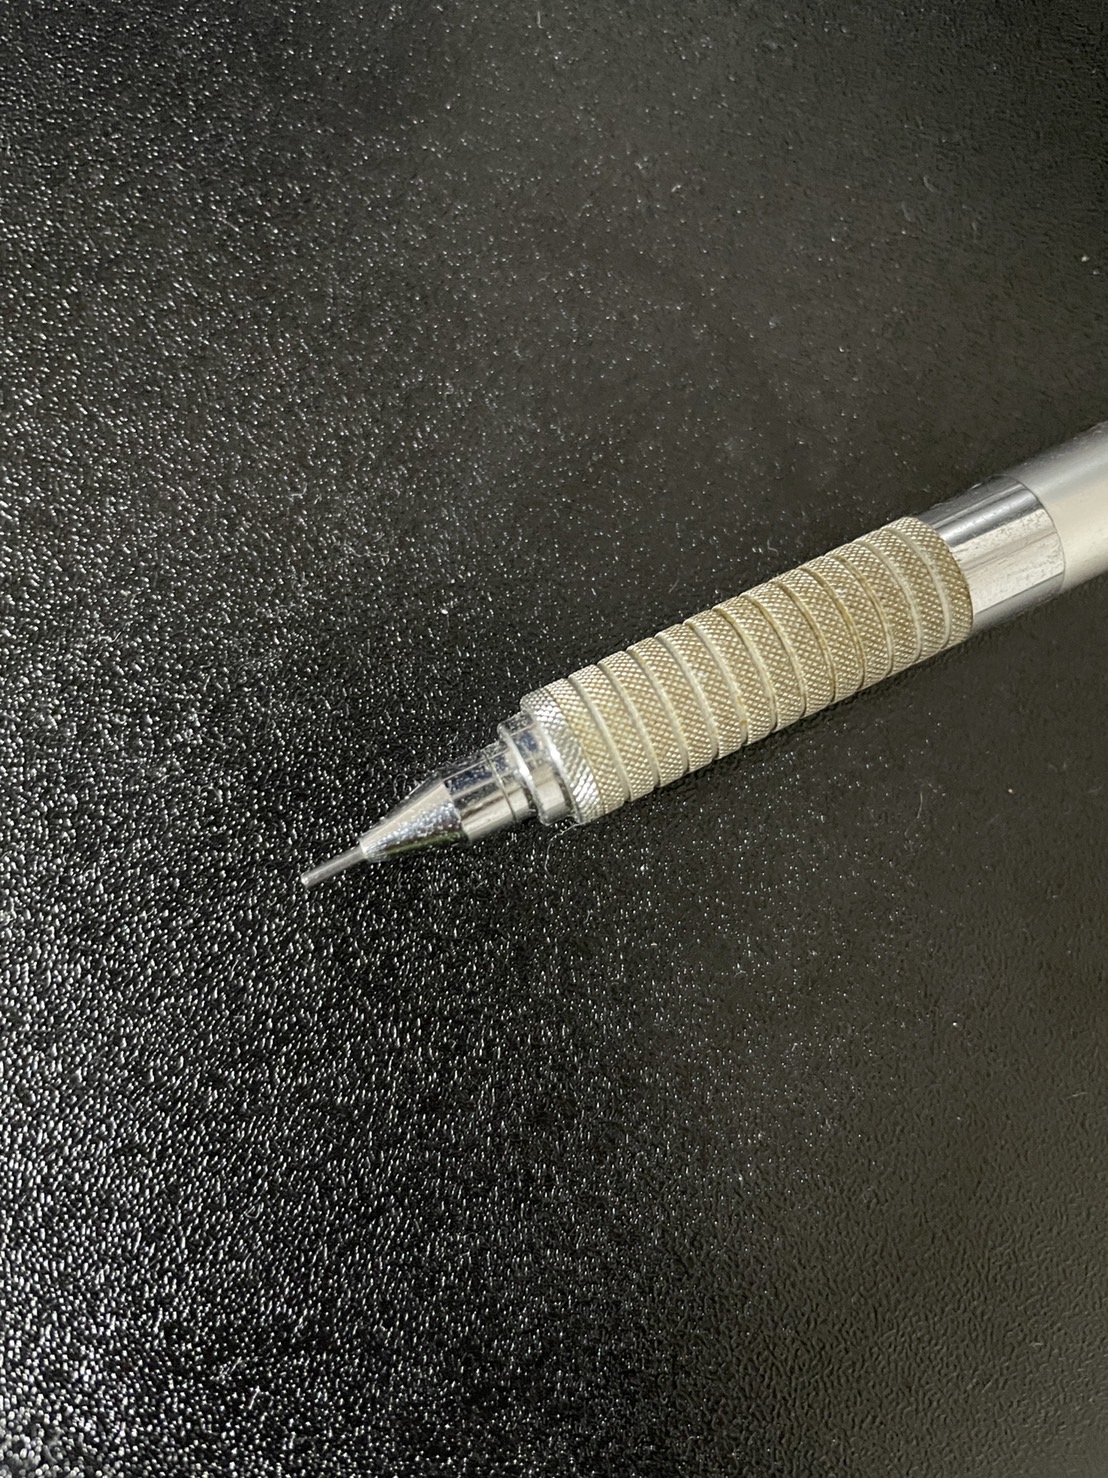 ステッドラー 925 25 0.5mm レビュー】人気製図シャーペンを4年間使用した評価は？書き味を徹底レビュー | ぶんぐ研究所